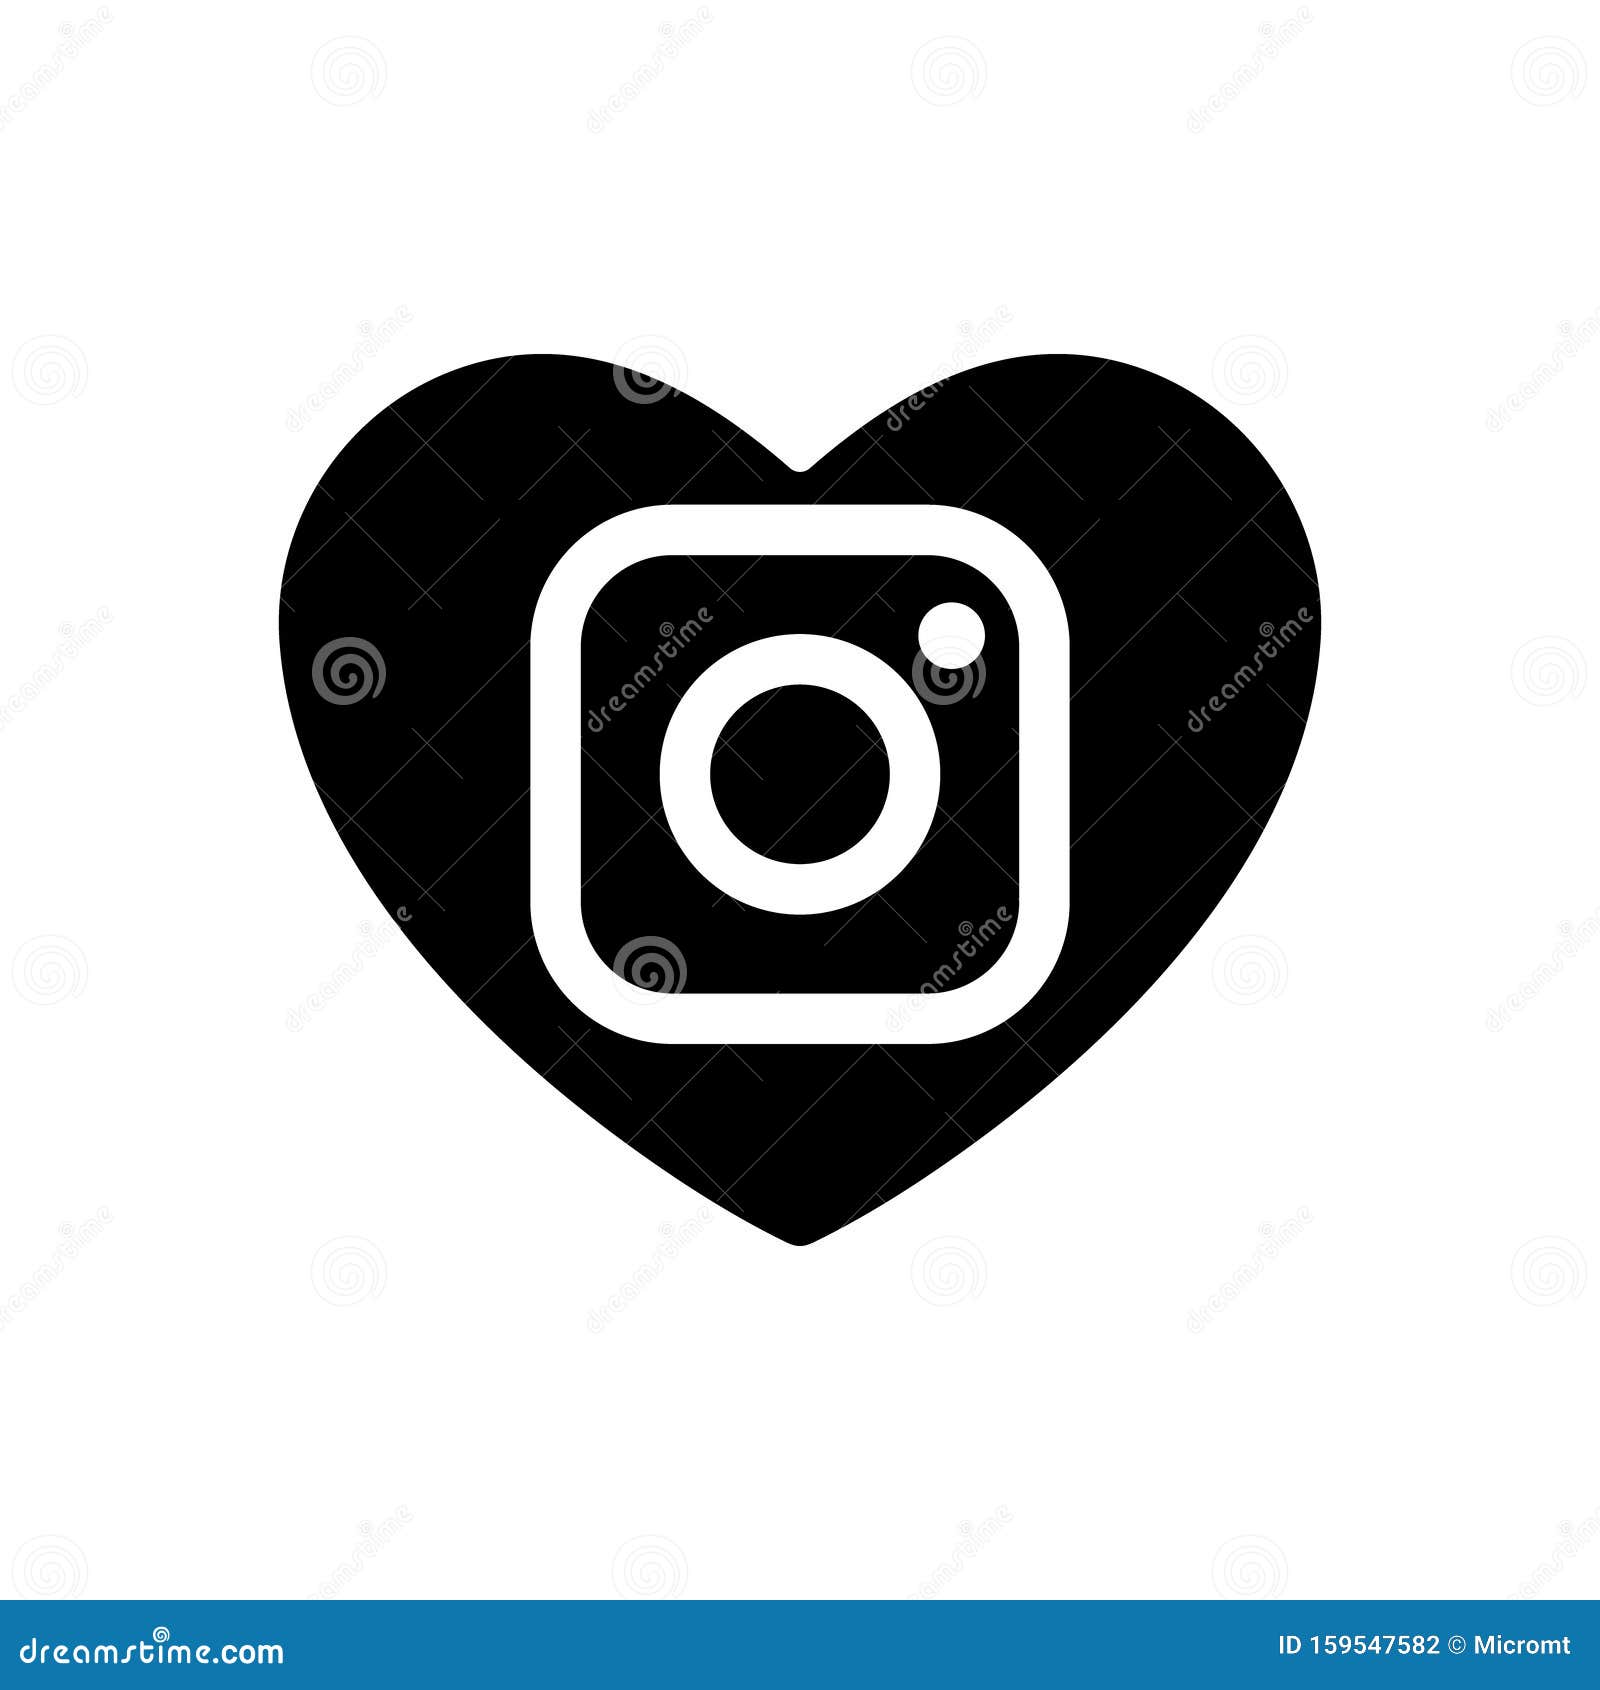 Biểu tượng trái tim của Instagram đã được cập nhật và trở nên đẹp hơn bao giờ hết. Với sự thay đổi này, trái tim trên Instagram giờ đây sẽ trở nên rực rỡ và rất ấn tượng, giúp bạn thể hiện sự yêu thương và quan tâm tới những gì bạn chia sẻ trên mạng xã hội này. Hãy liên tục cập nhật biểu tượng này để luôn có những trải nghiệm độc đáo.